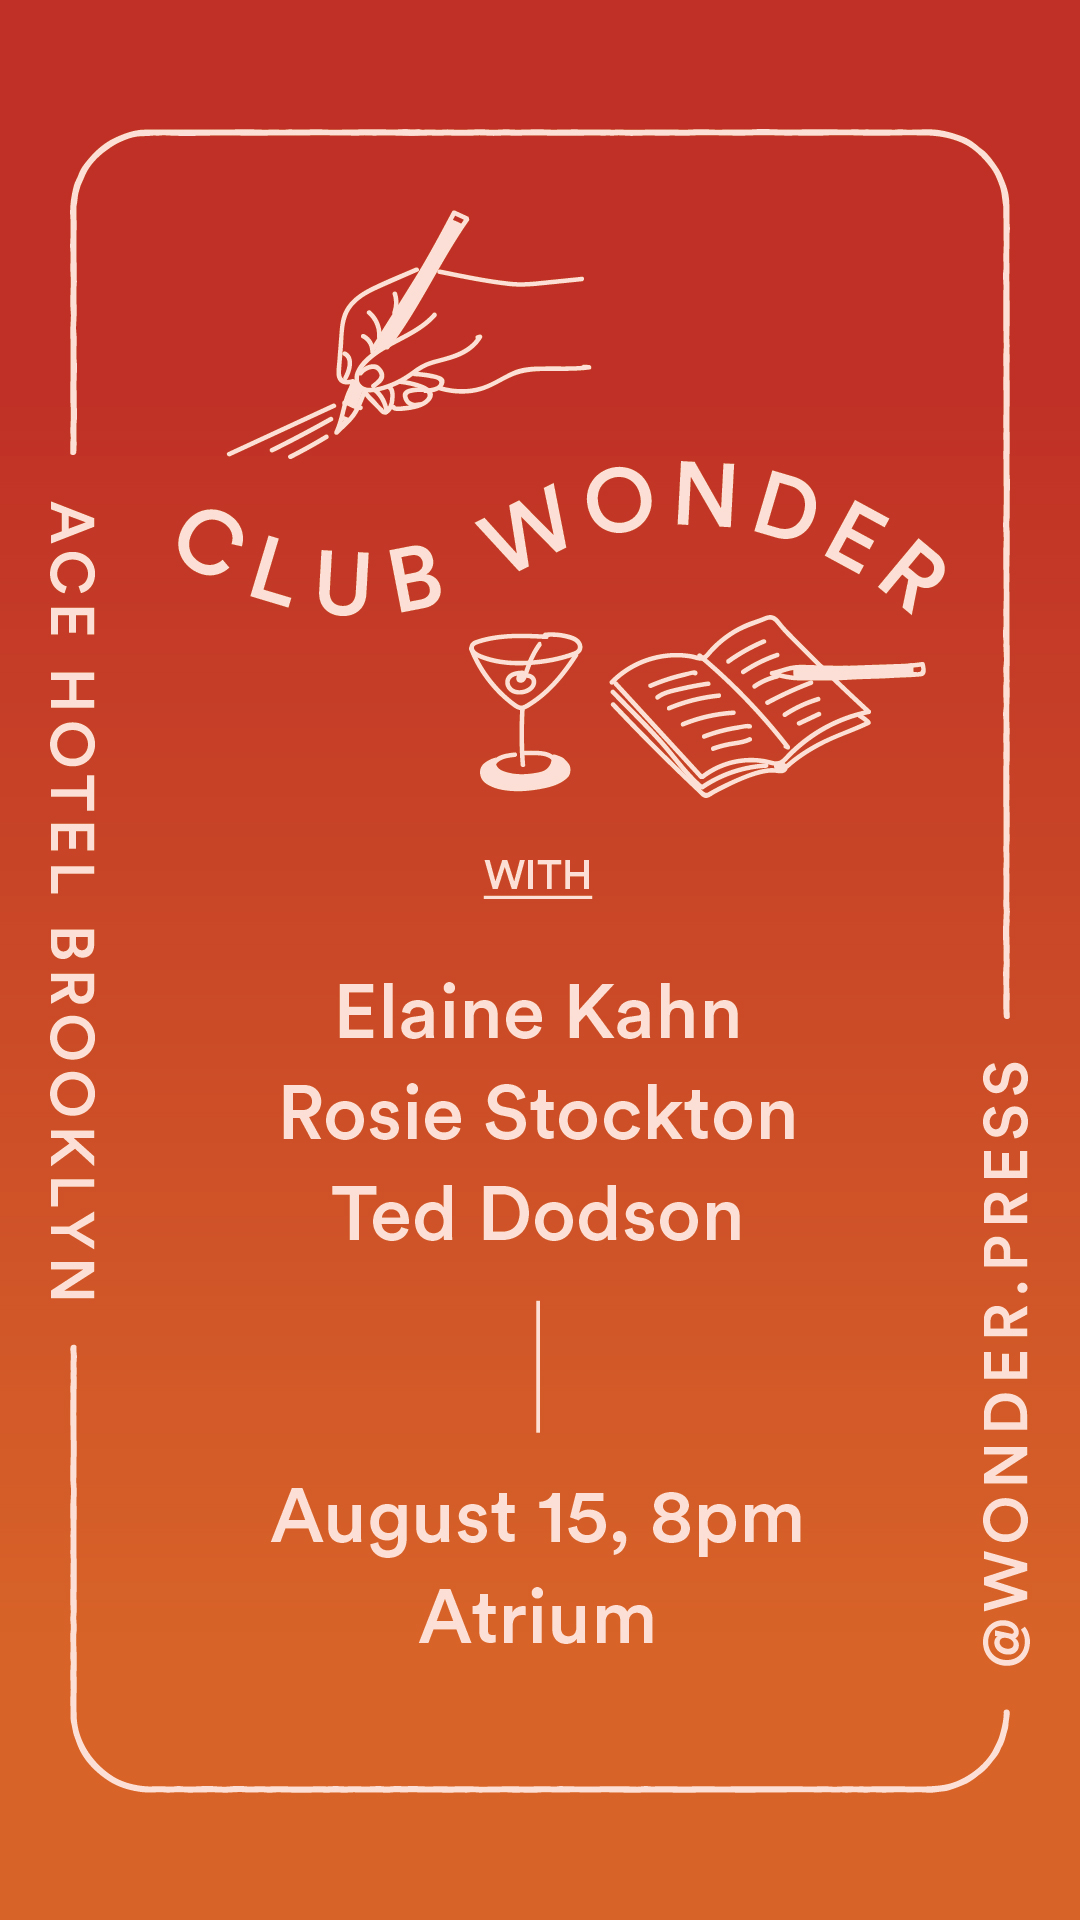 Club Wonder promo